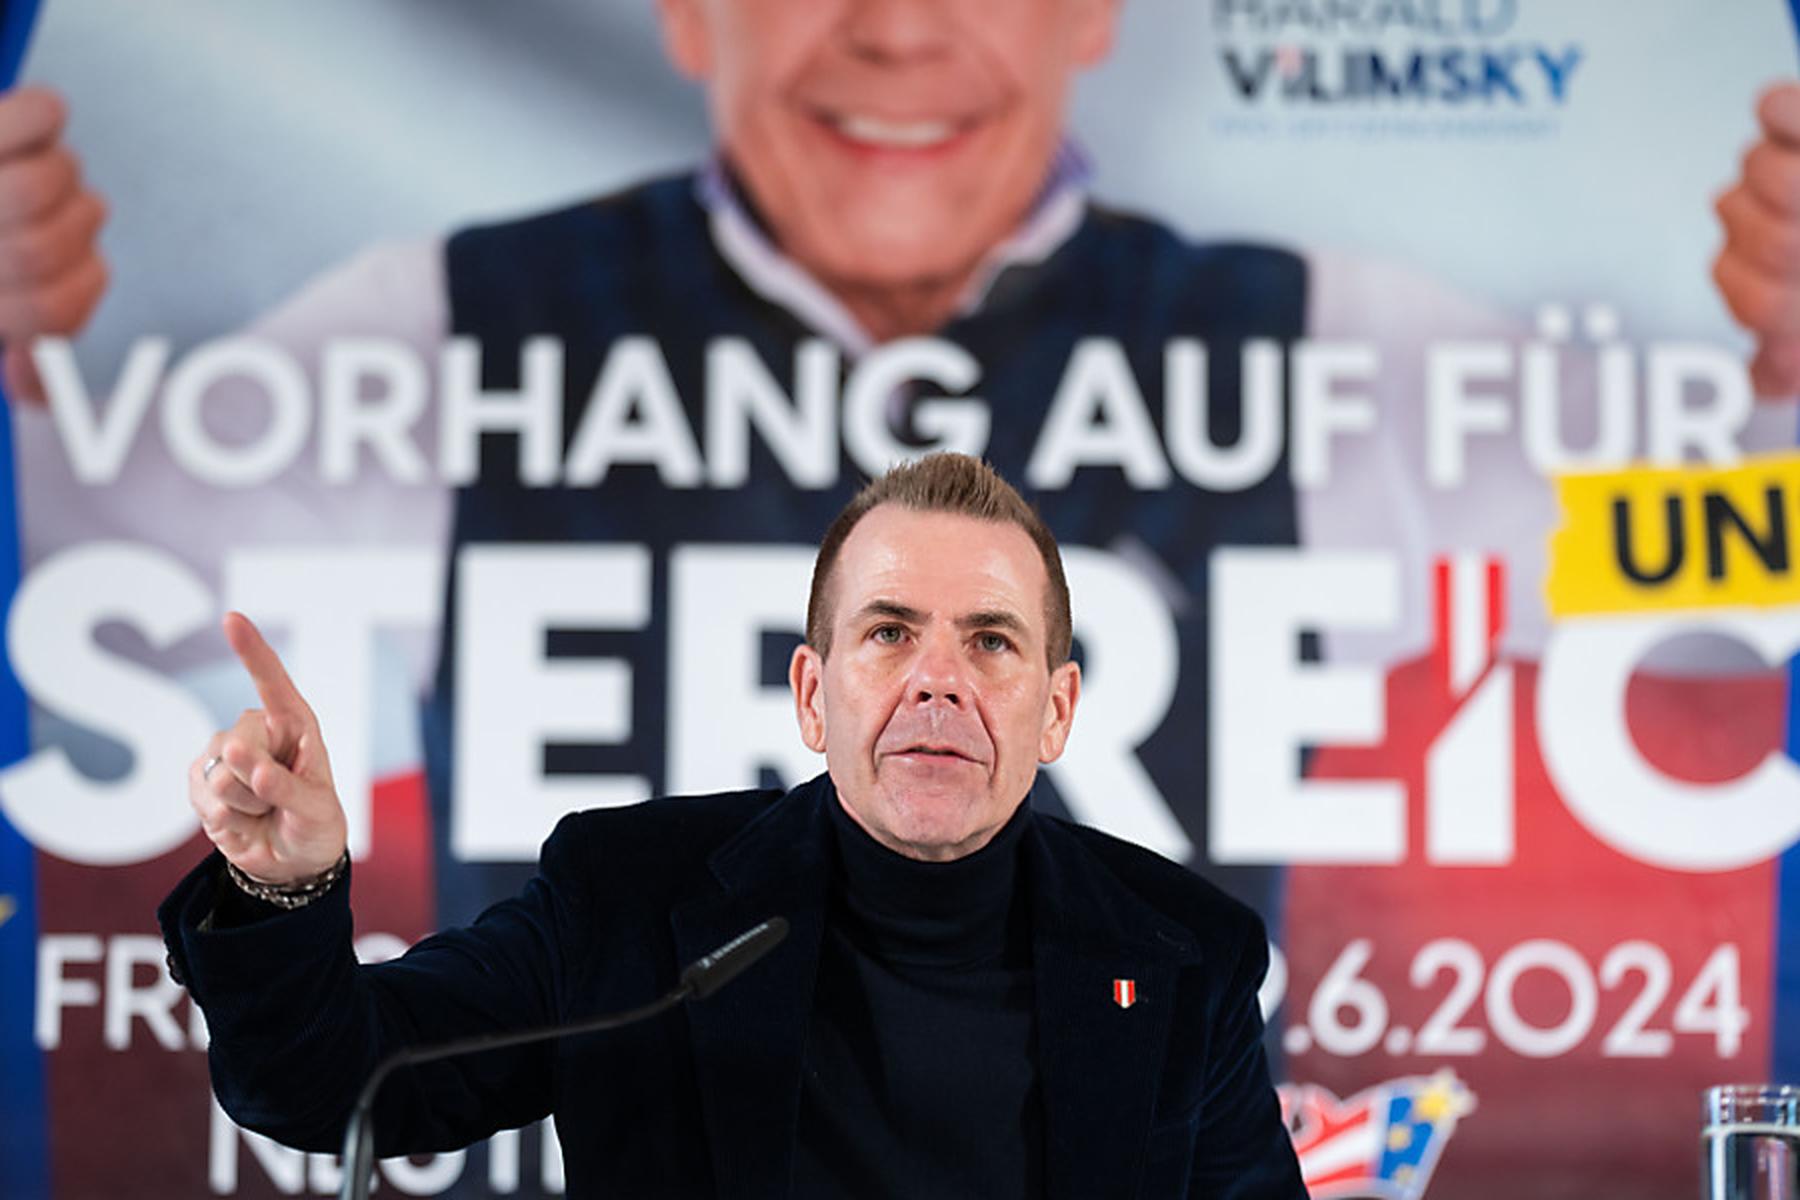 Wien: FPÖ in Umfrage für EU-Wahl stabil erste, NEOS legen zu